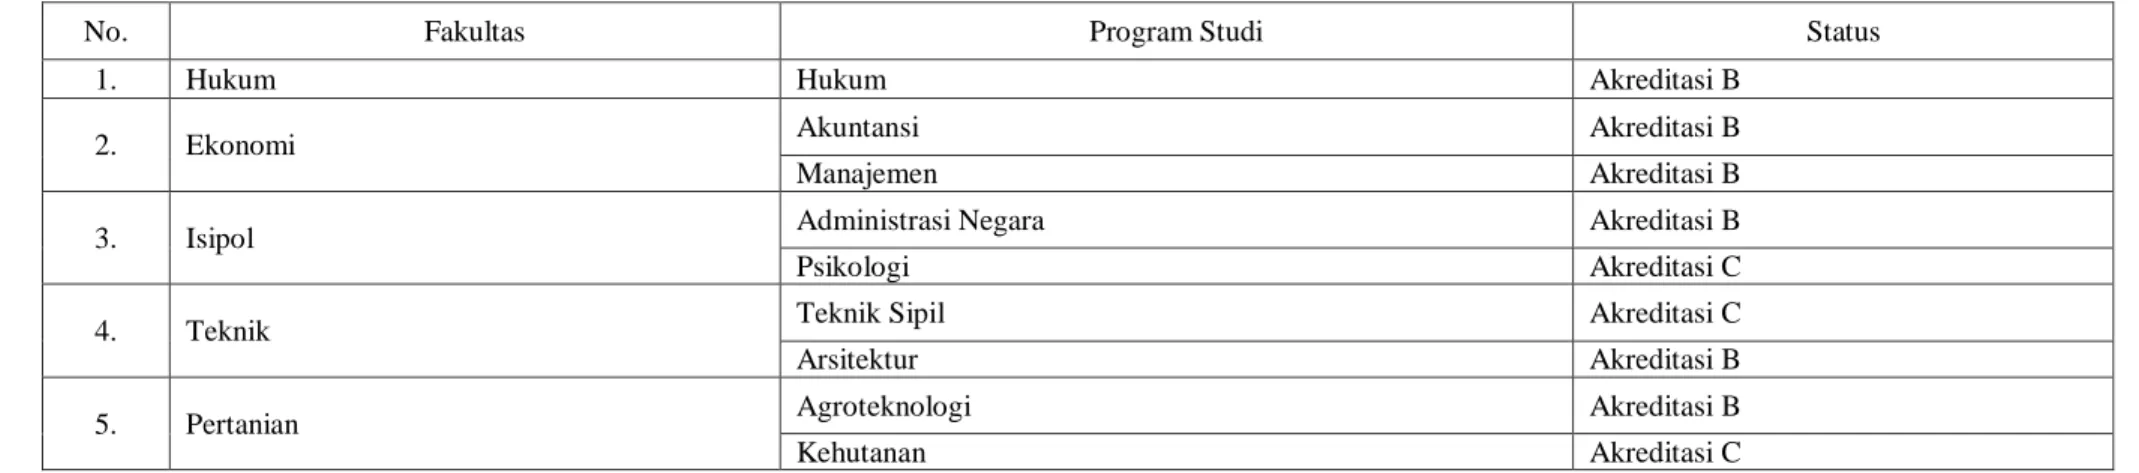 Tabel 1.1  Fakultas dan Program Studi di Universitas 17 Agustus 1945 Samarinda 